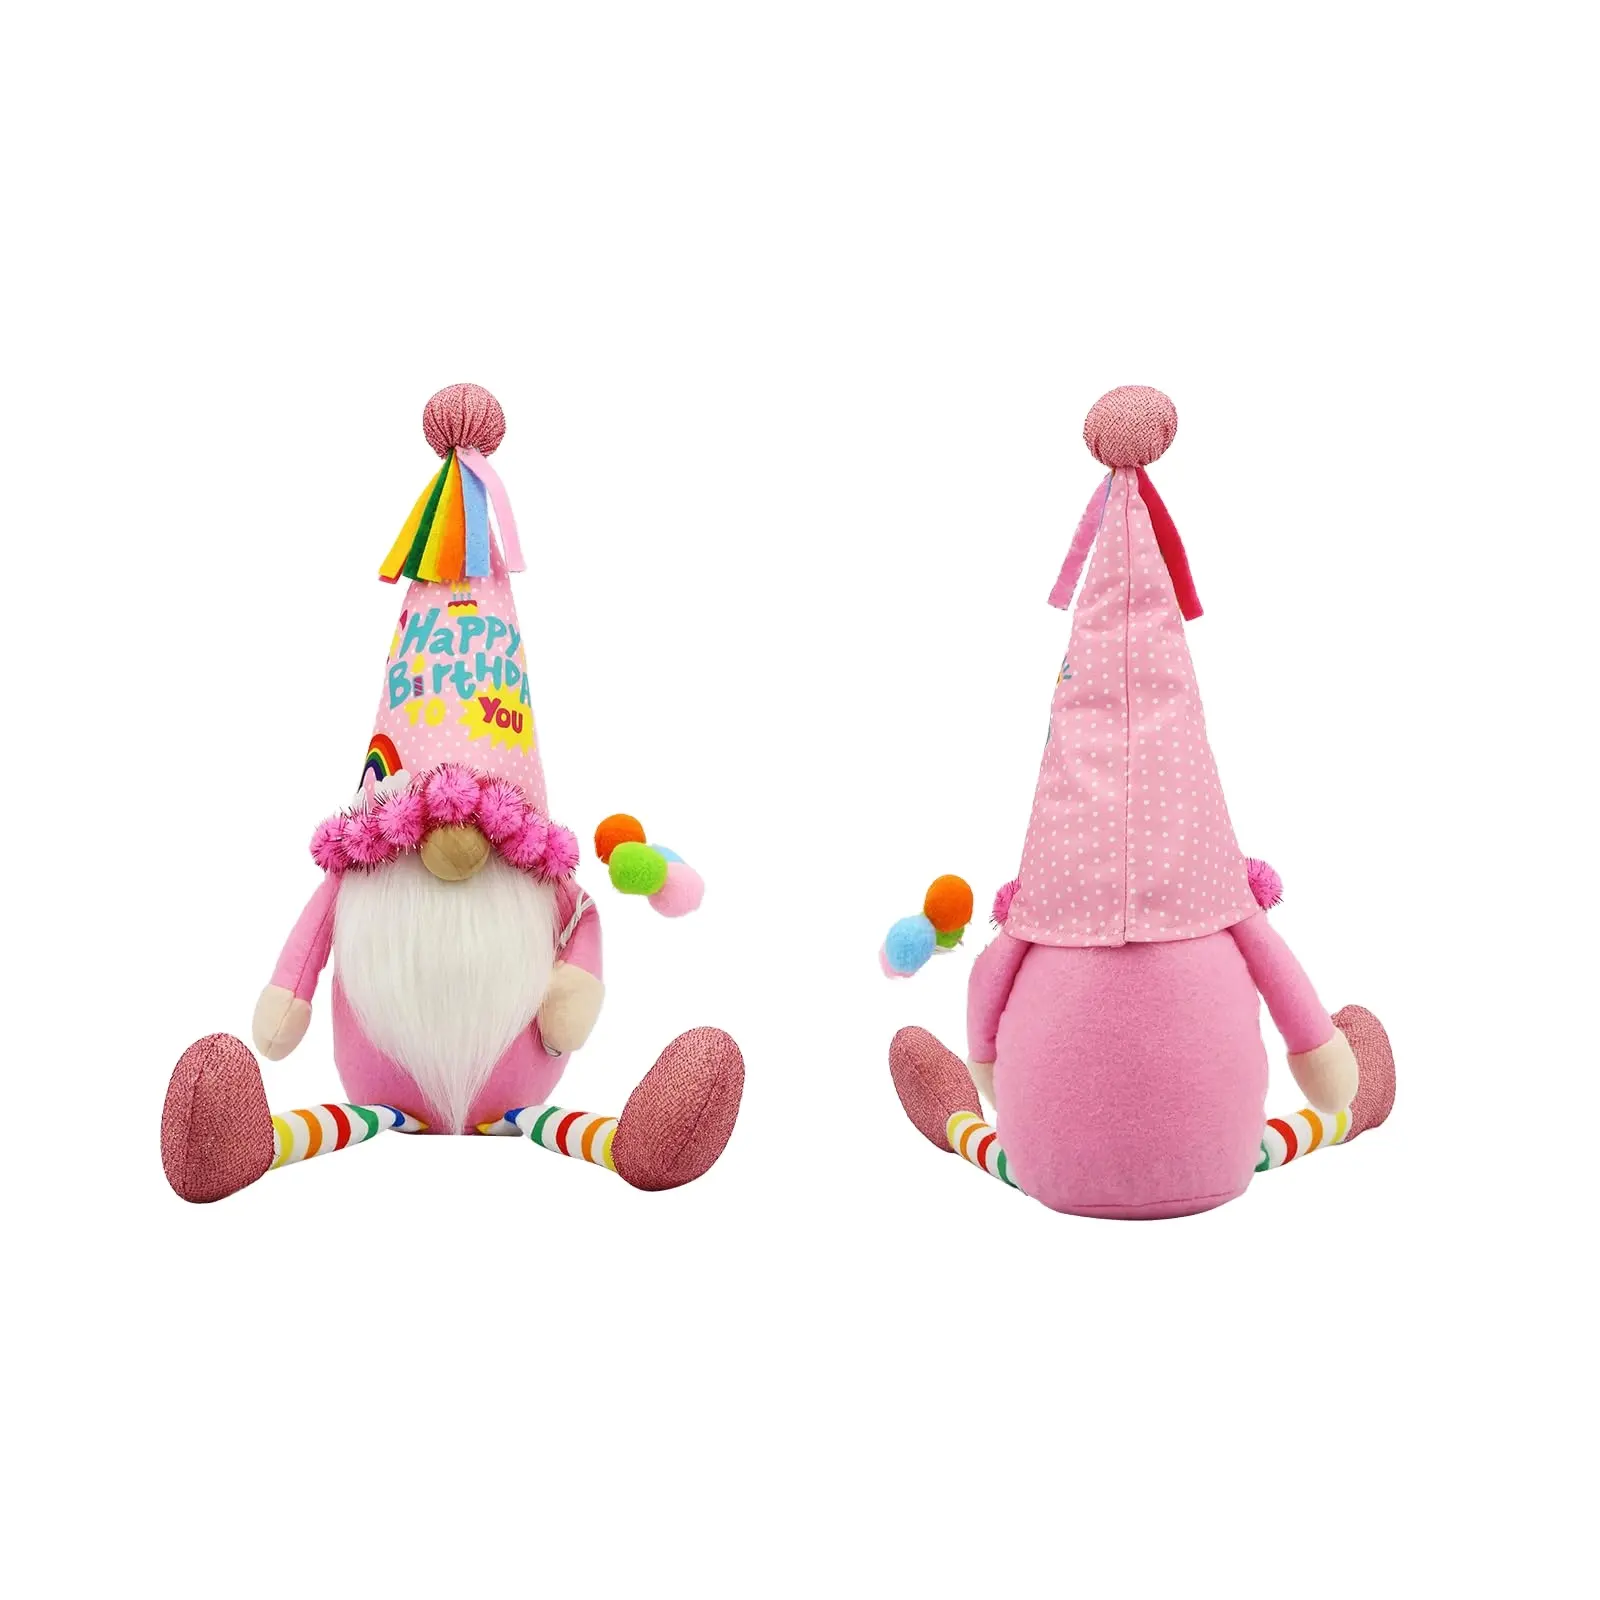 Pafu Geburtstagsgeschenke für Damen für ihre besten Freunde Geburtstagsgeschenkideen Geburtstagsdekoration lustige Gnome Geschenke